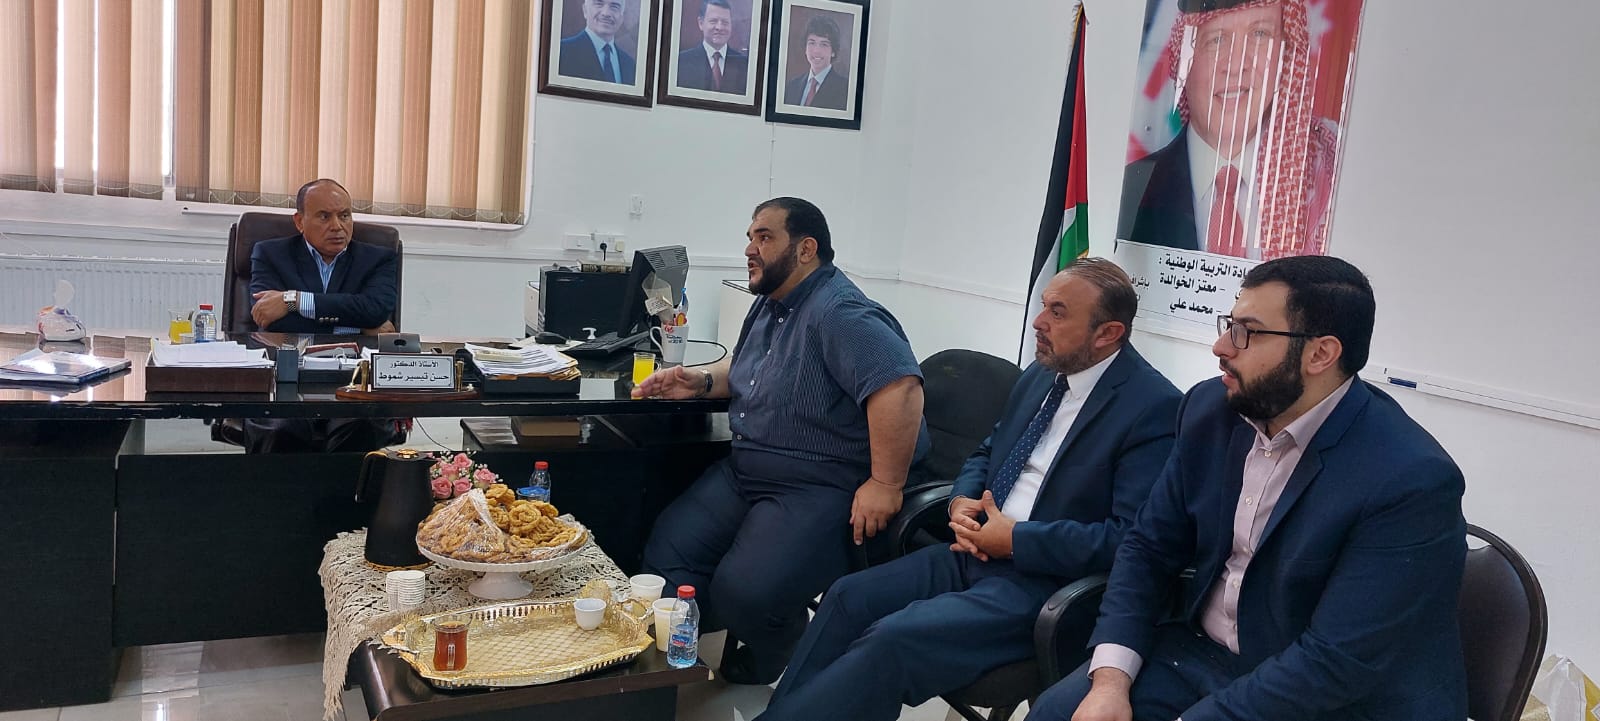 رئيس جامعة جرش يلتقي عميد وأعضاء هيئة التدريس في كلية الشريعة